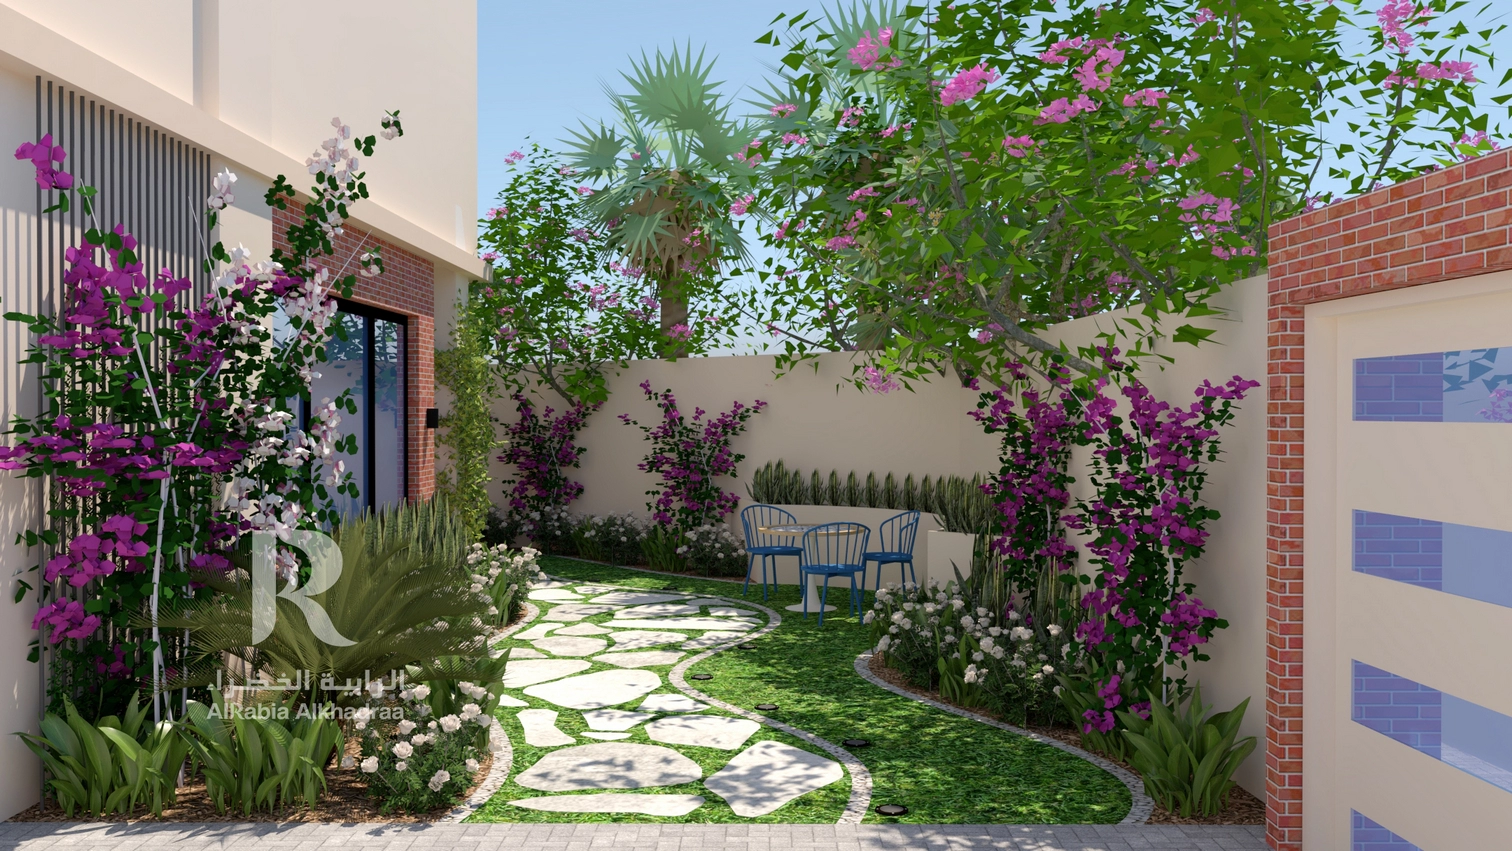 Landscape design | Al Rabia Alkhadraa | Qetaat.com